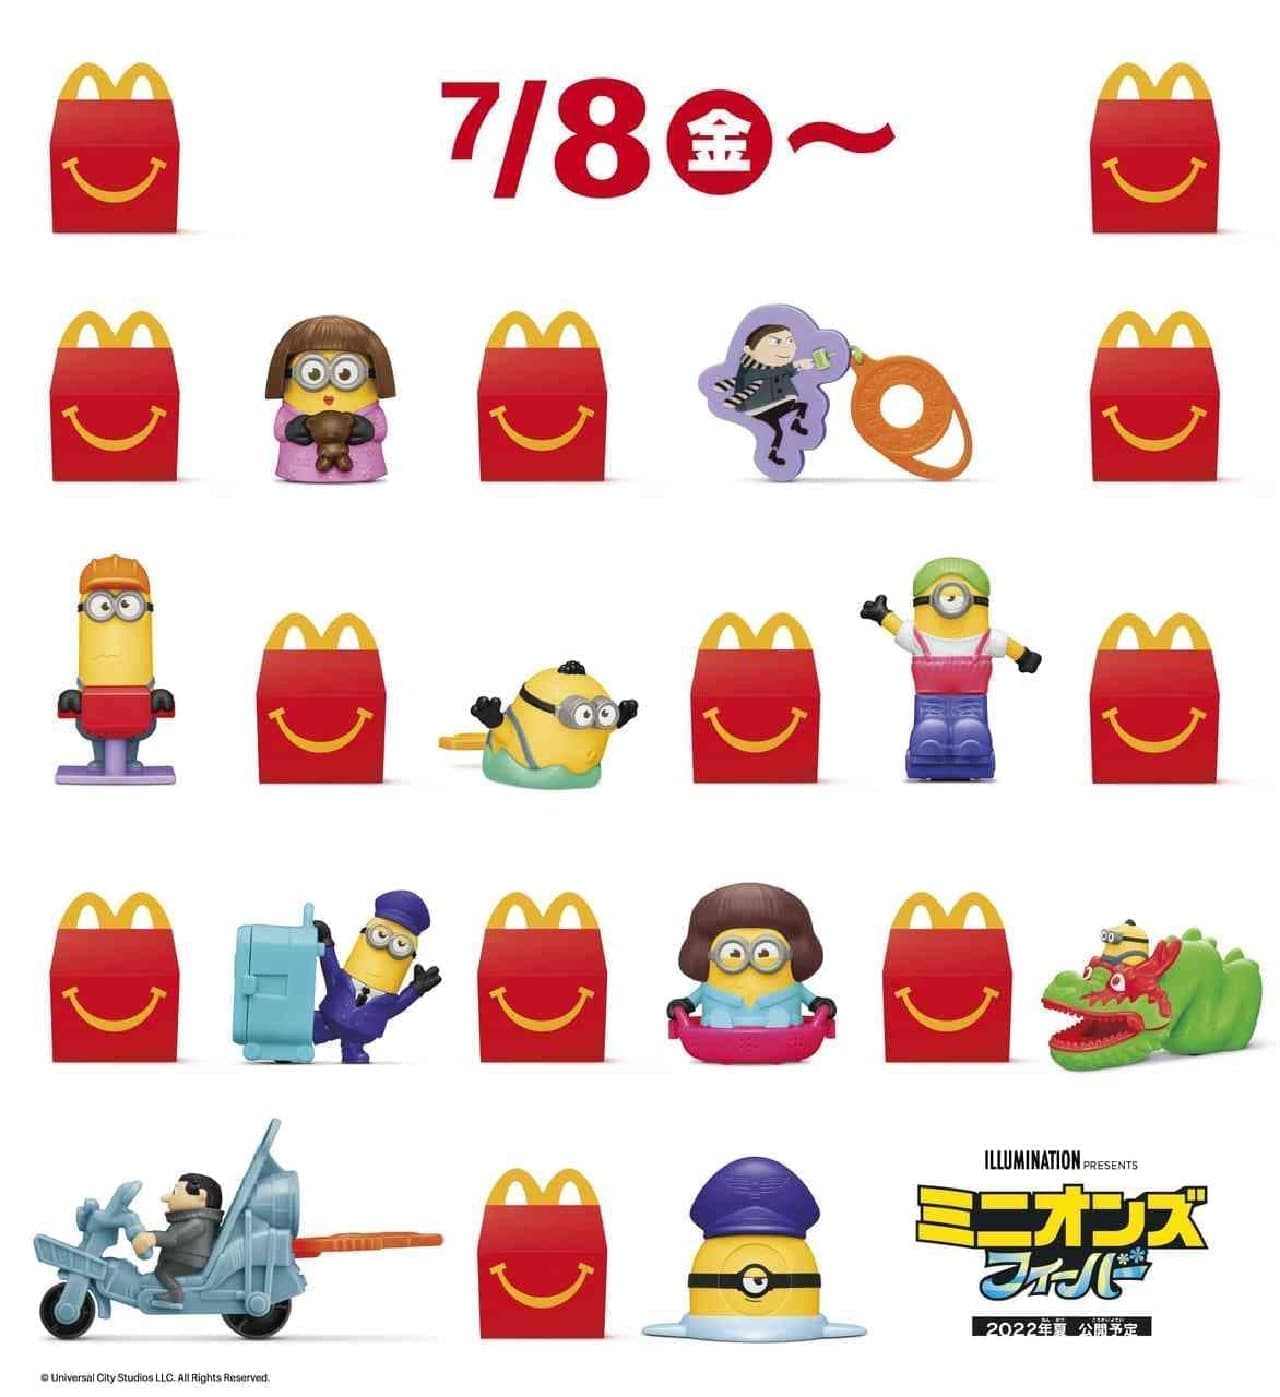 McDonald's Happy Set "Minions Fever